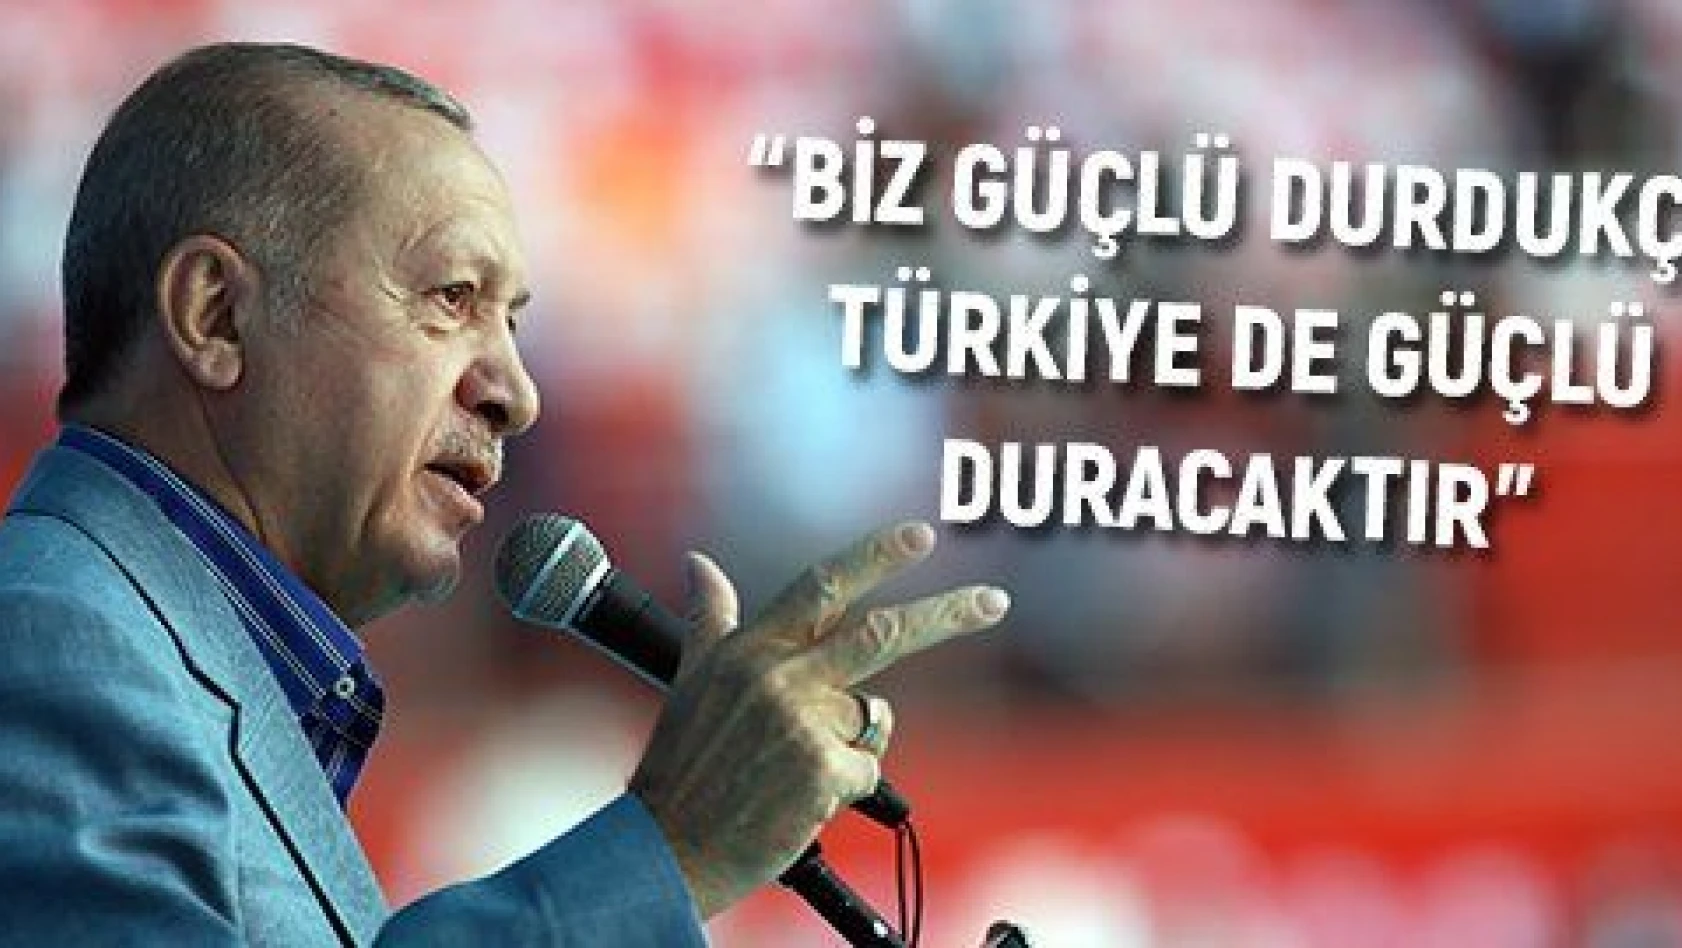 'Biz güçlü durdukça Türkiye de güçlü duracaktır'